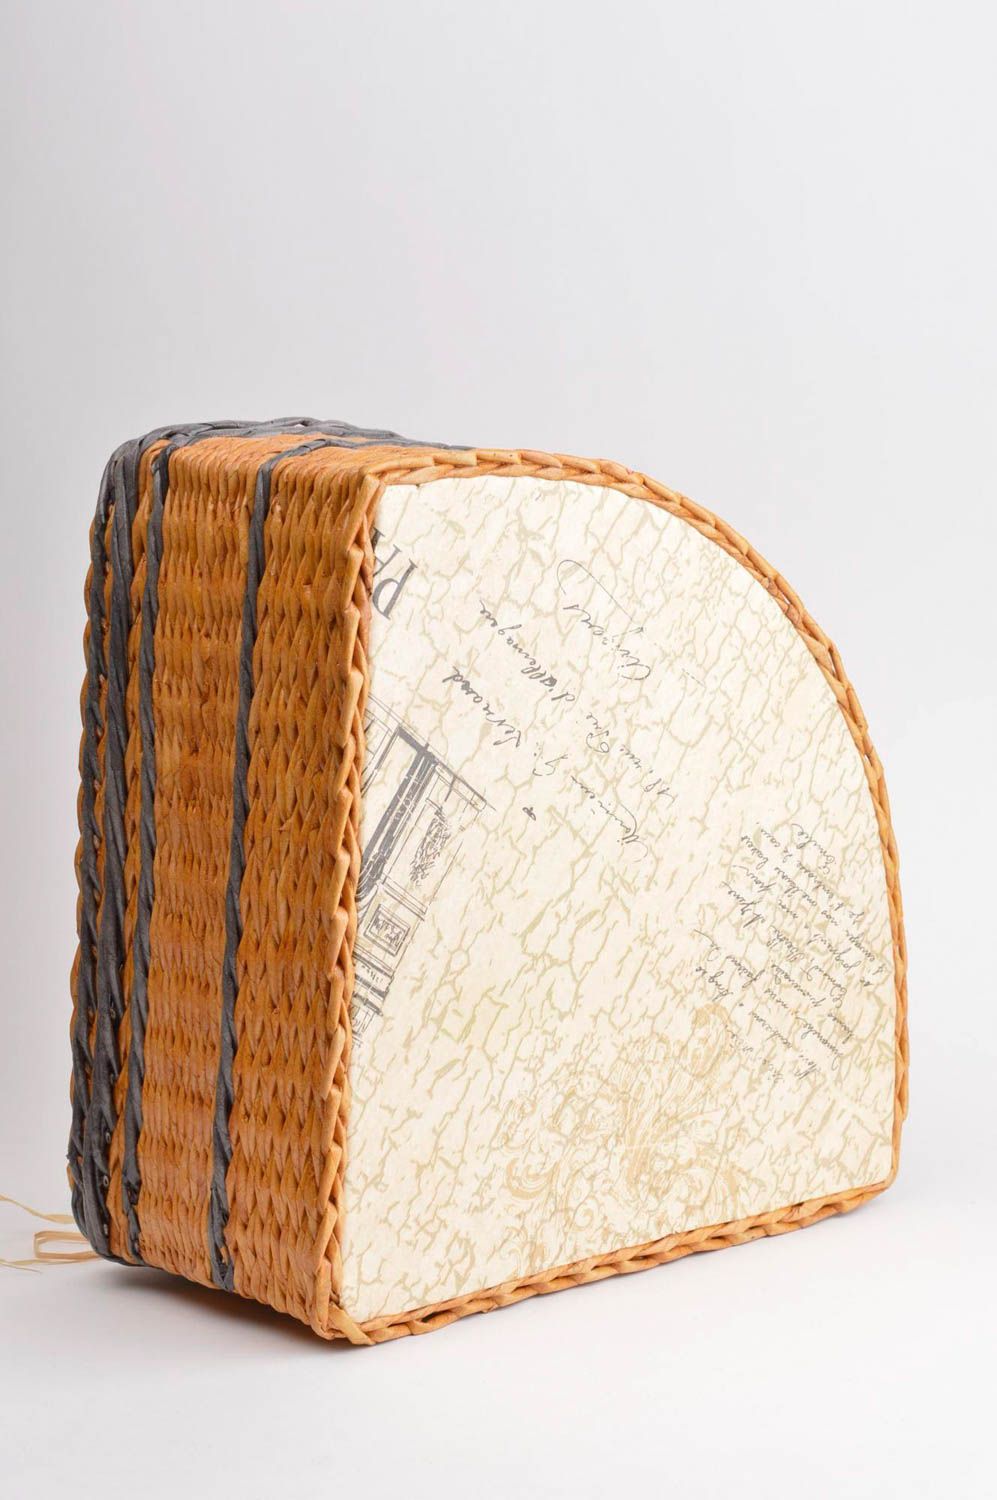 Предмет интерьера ручной работы плетеная корзина в угол подарочная корзина фото 4